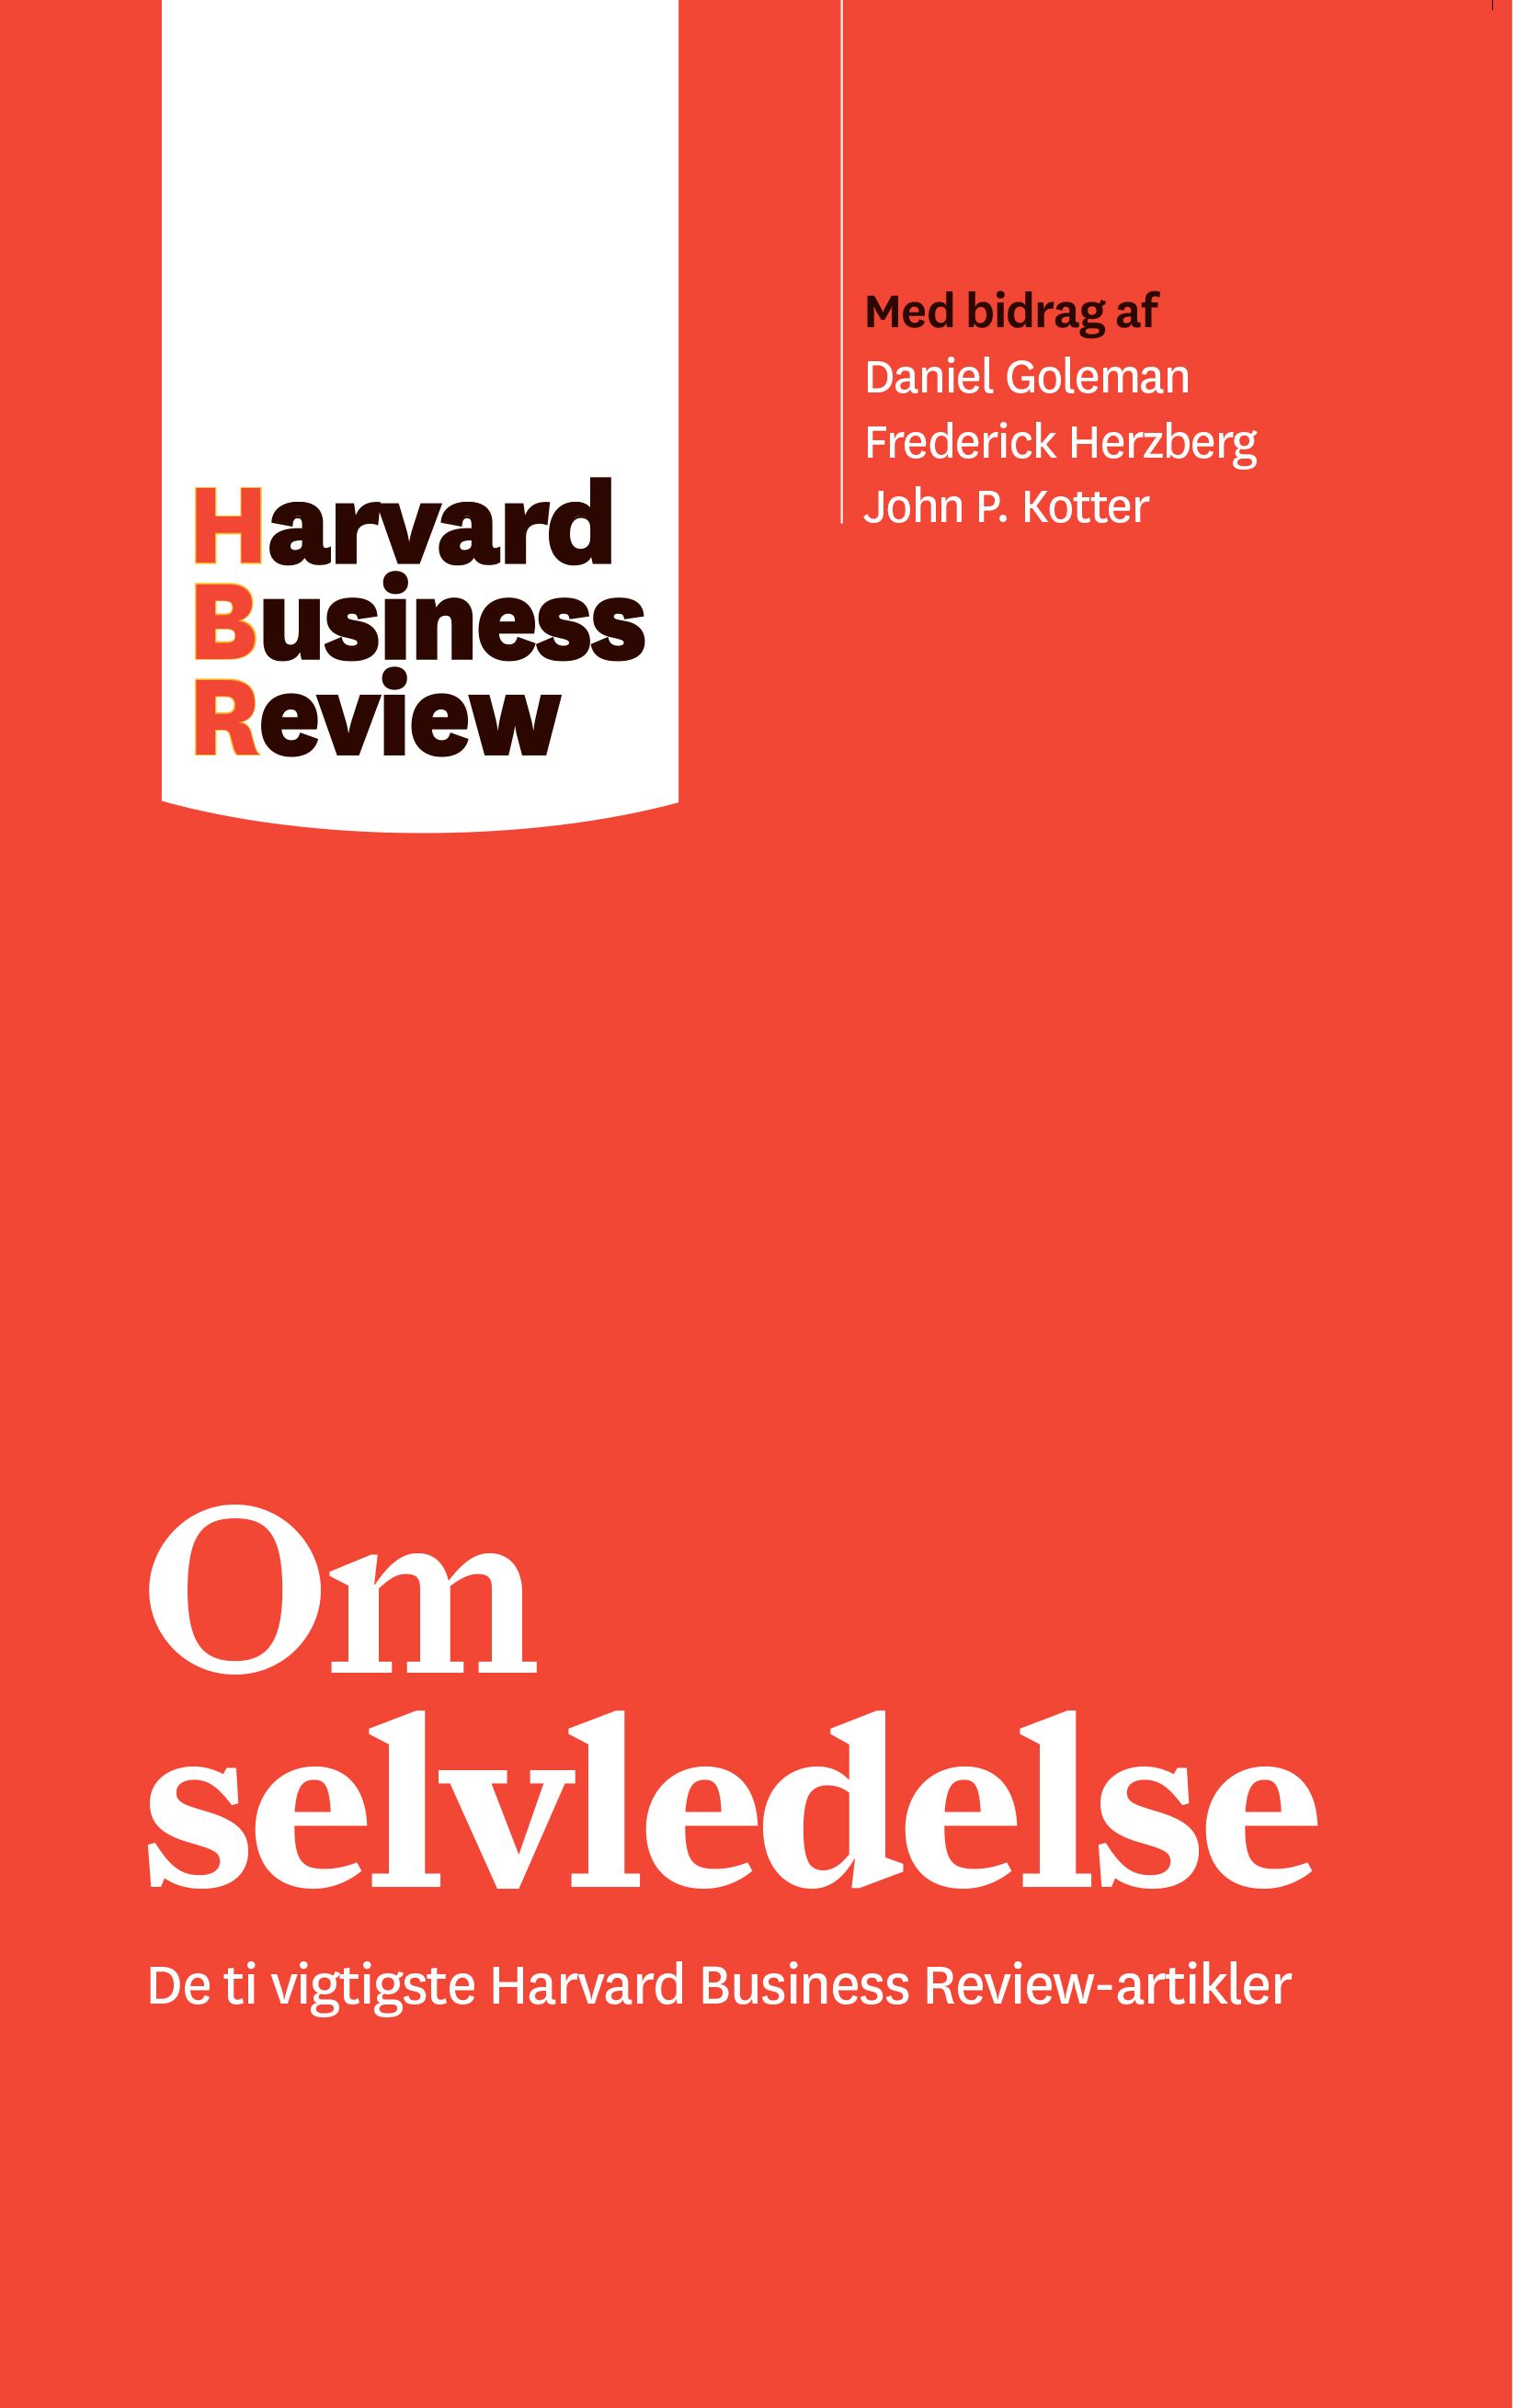 Om selvledelse, e-bog af Harvard Business Review